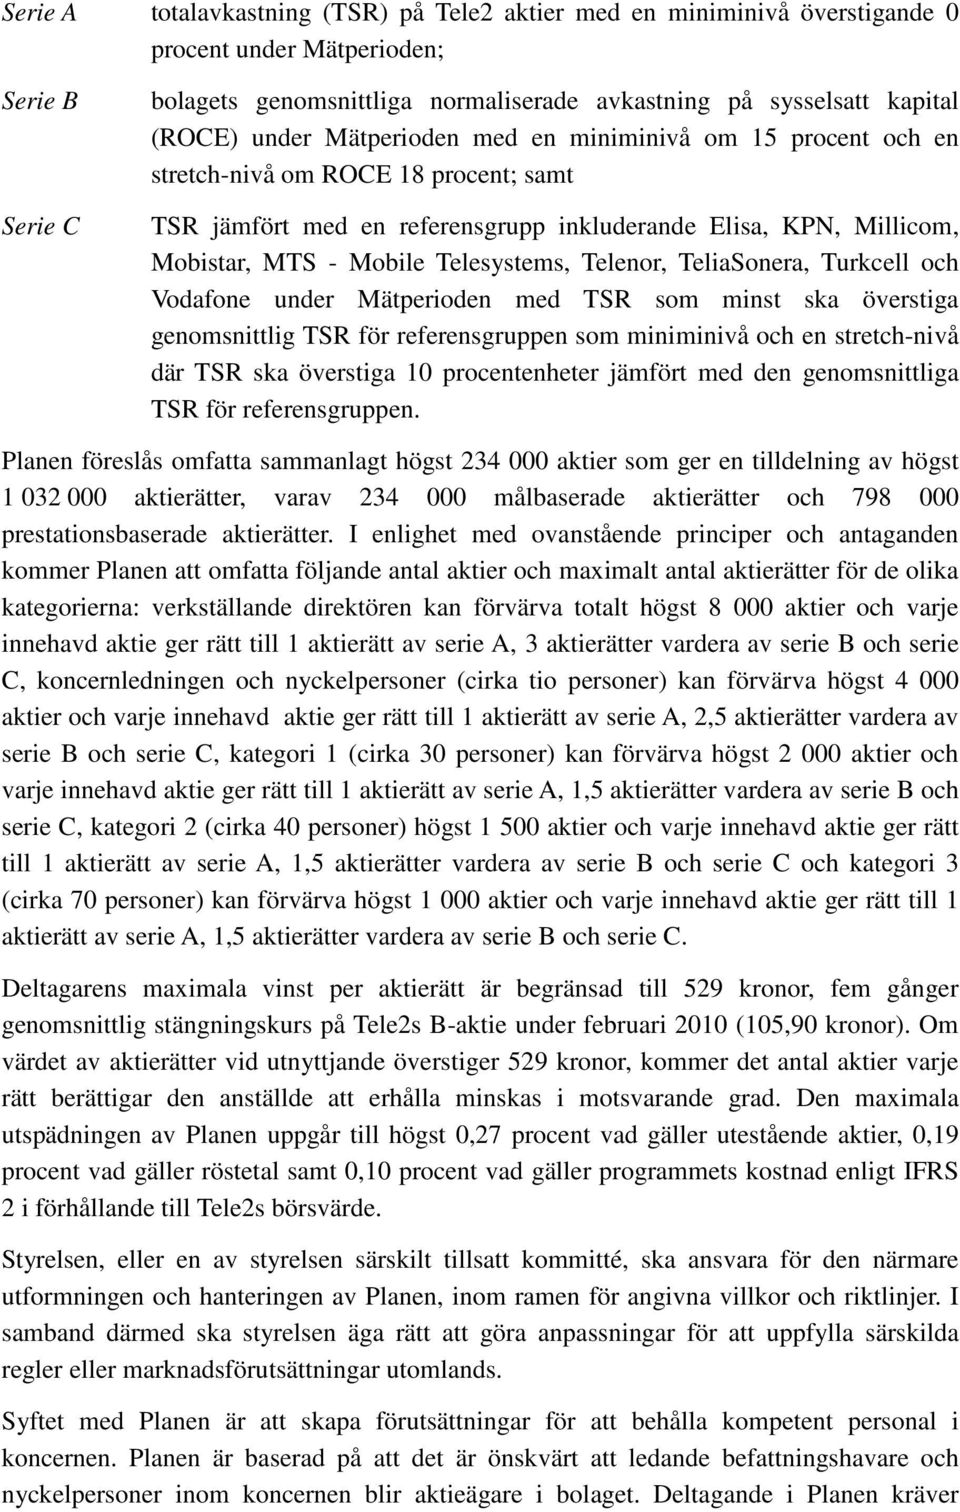 Telenor, TeliaSonera, Turkcell och Vodafone under Mätperioden med TSR som minst ska överstiga genomsnittlig TSR för referensgruppen som miniminivå och en stretch-nivå där TSR ska överstiga 10